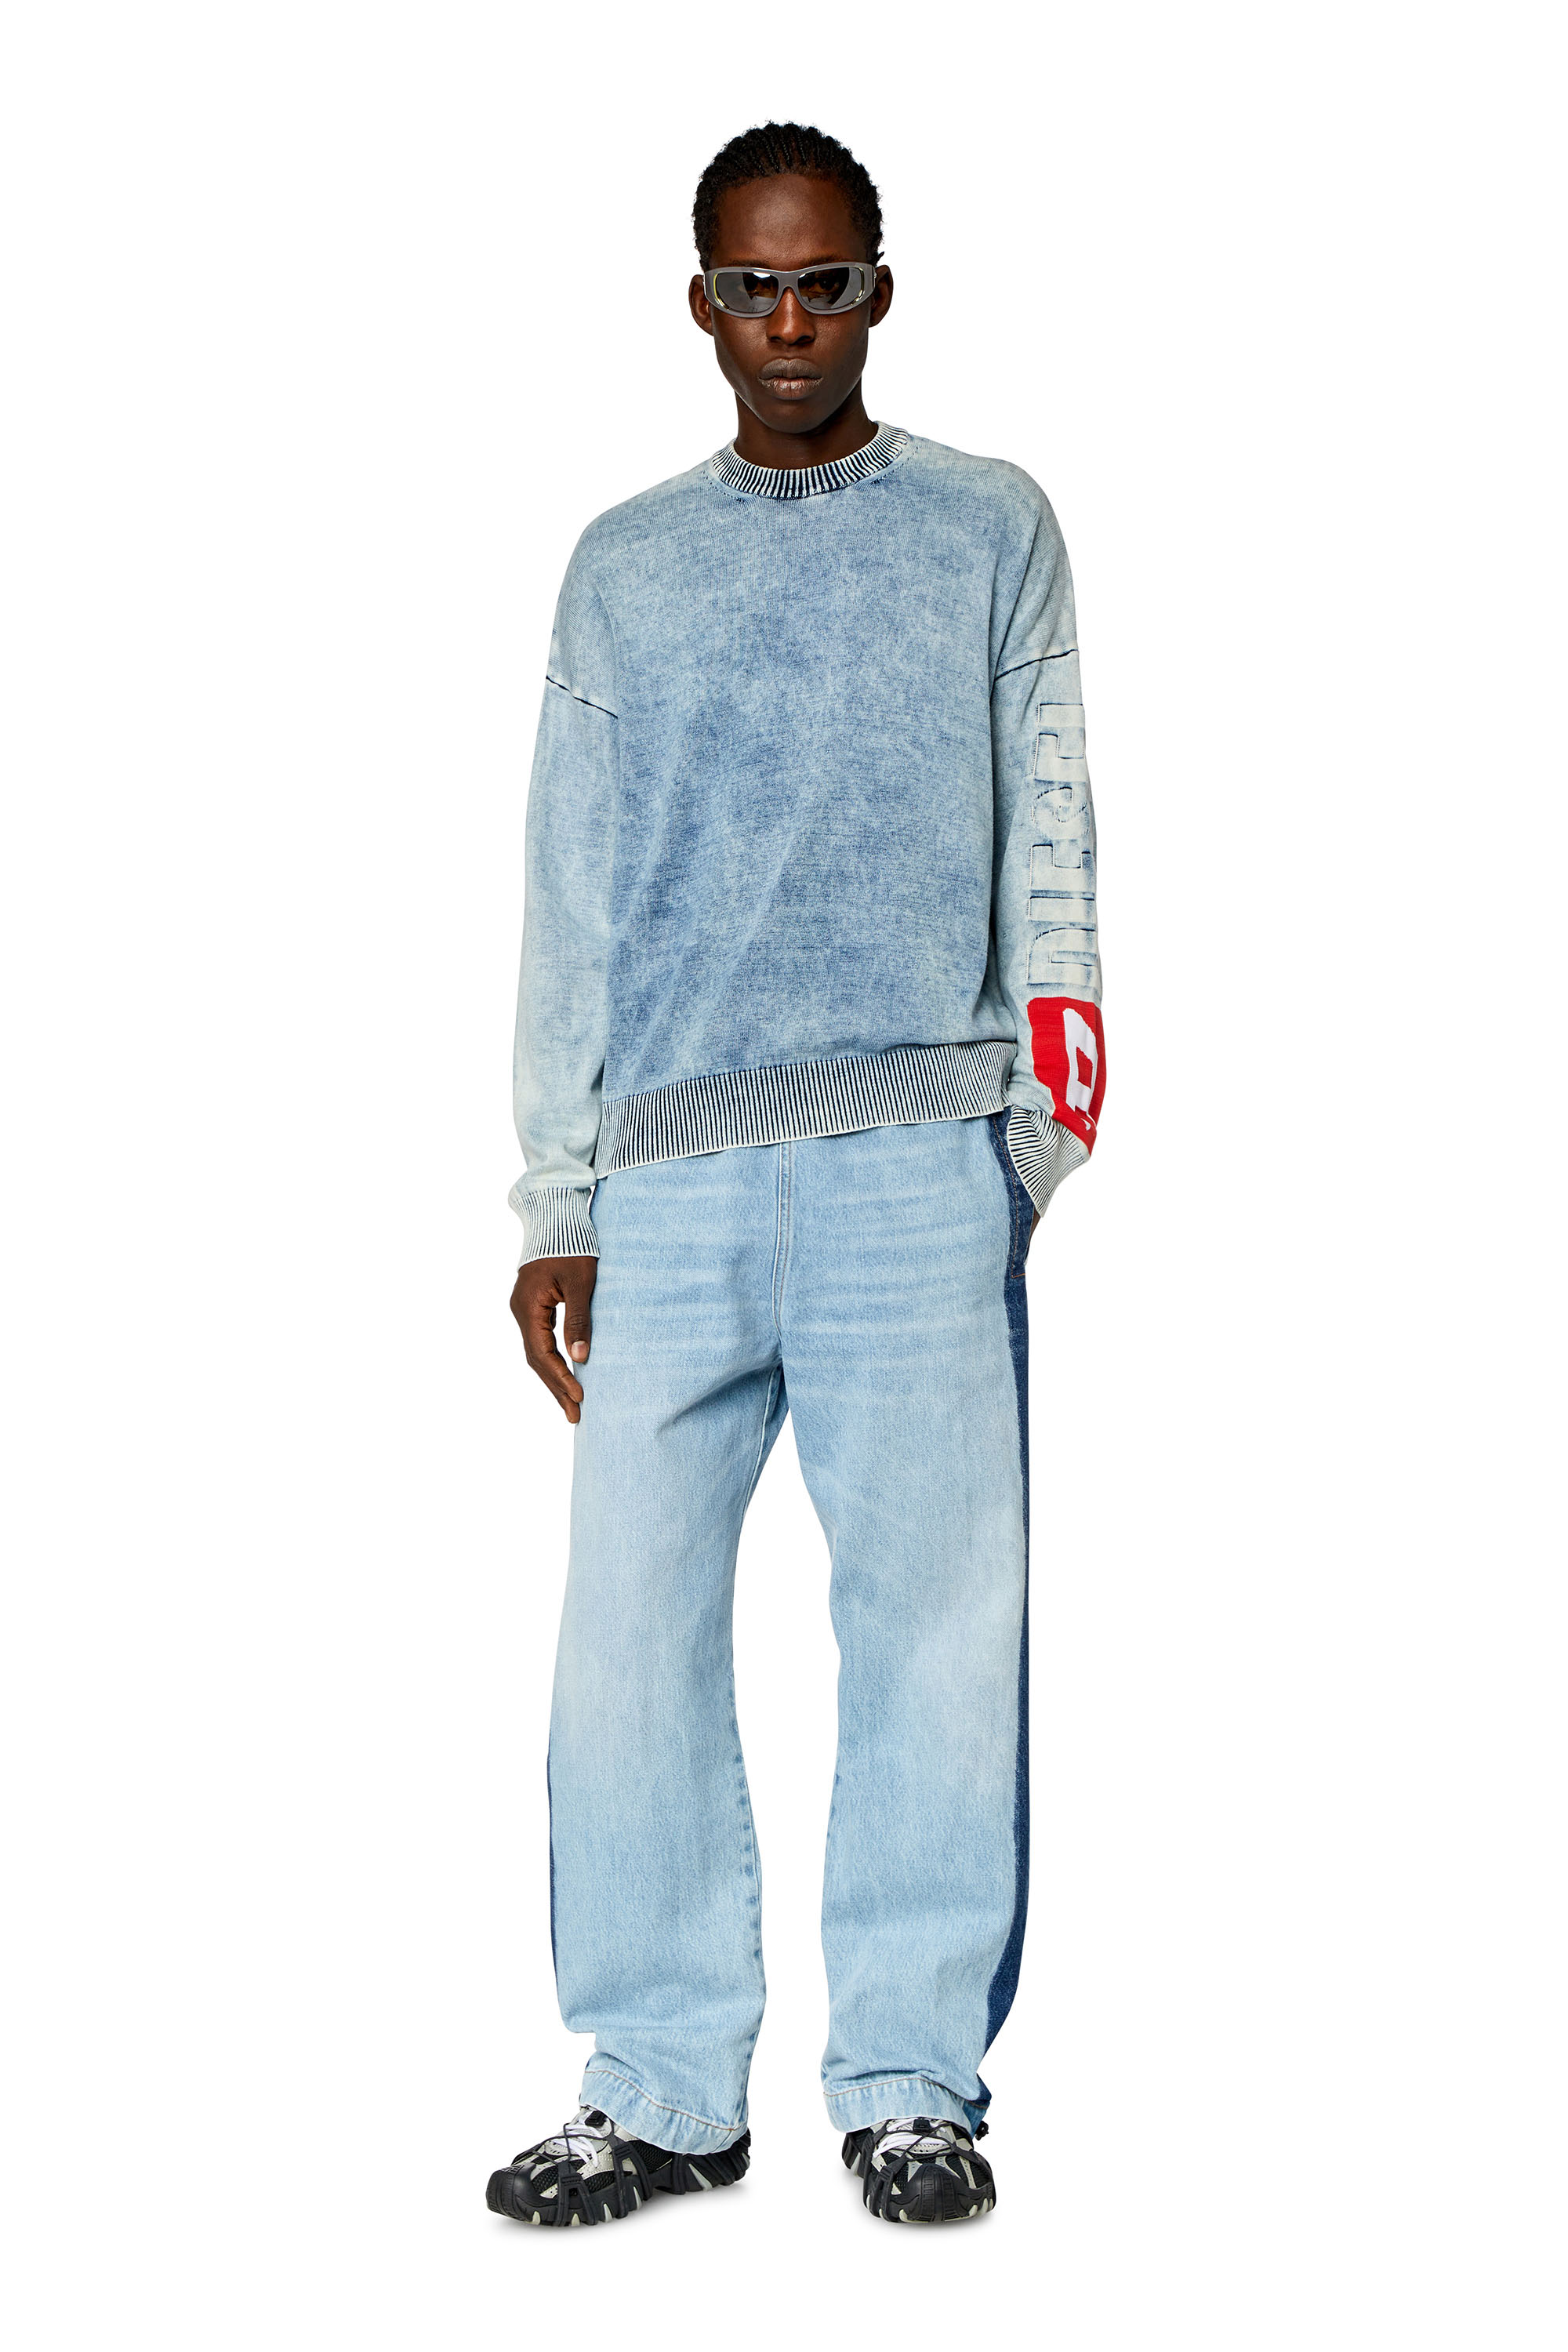 Diesel - K-ZEROS, Hombre Jersey de algodón índigo in Azul marino - Image 2